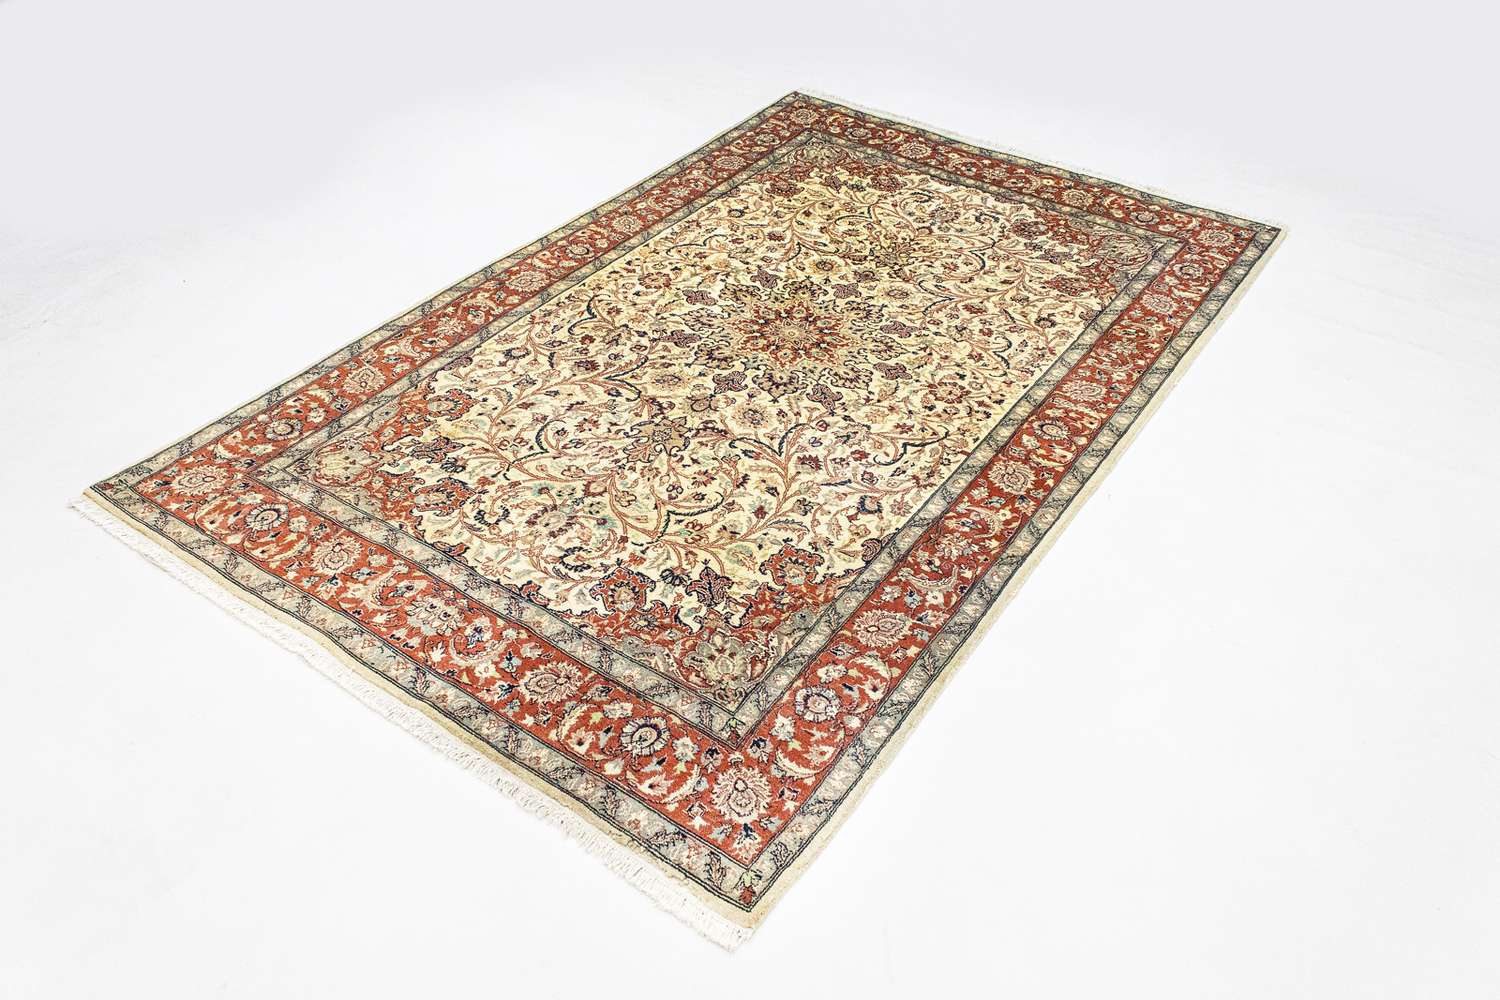 Orientalsk teppe - 223 x 143 cm - beige